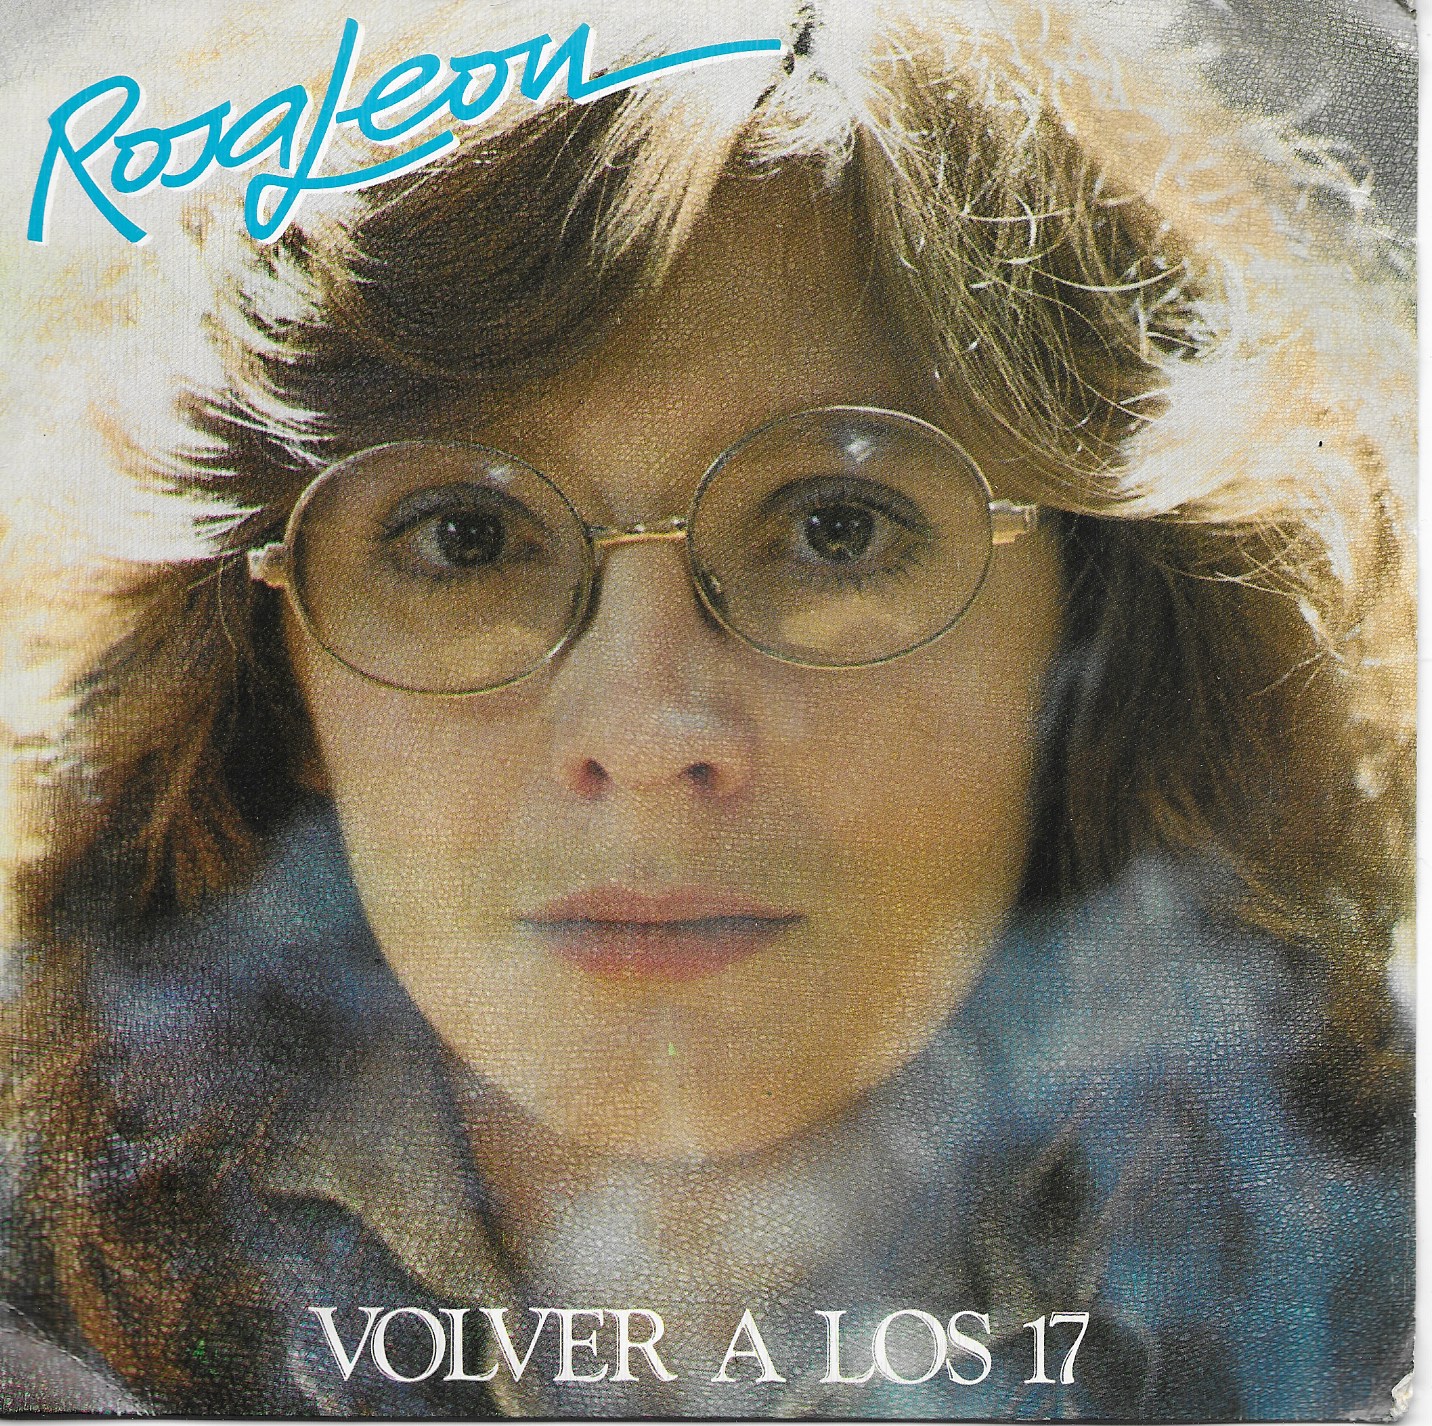 Rosa León. Movie Play 1983. 45RPM SP 2 títulos: Volver a los 17/Si eres tu